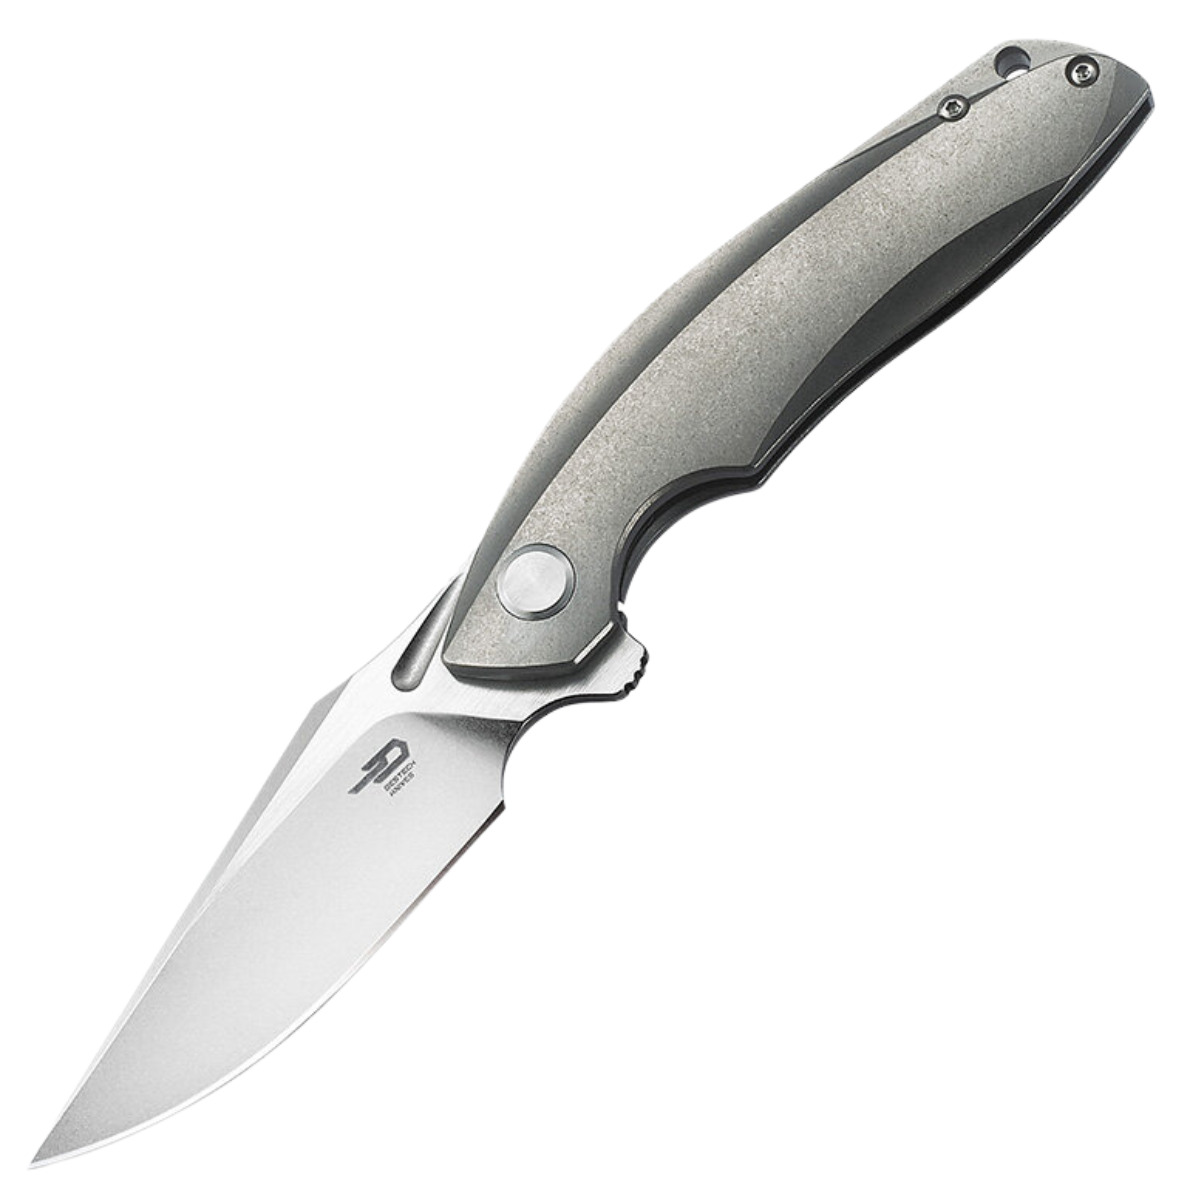 Bestech Knife Ghost Grey Titanium, BT1905A